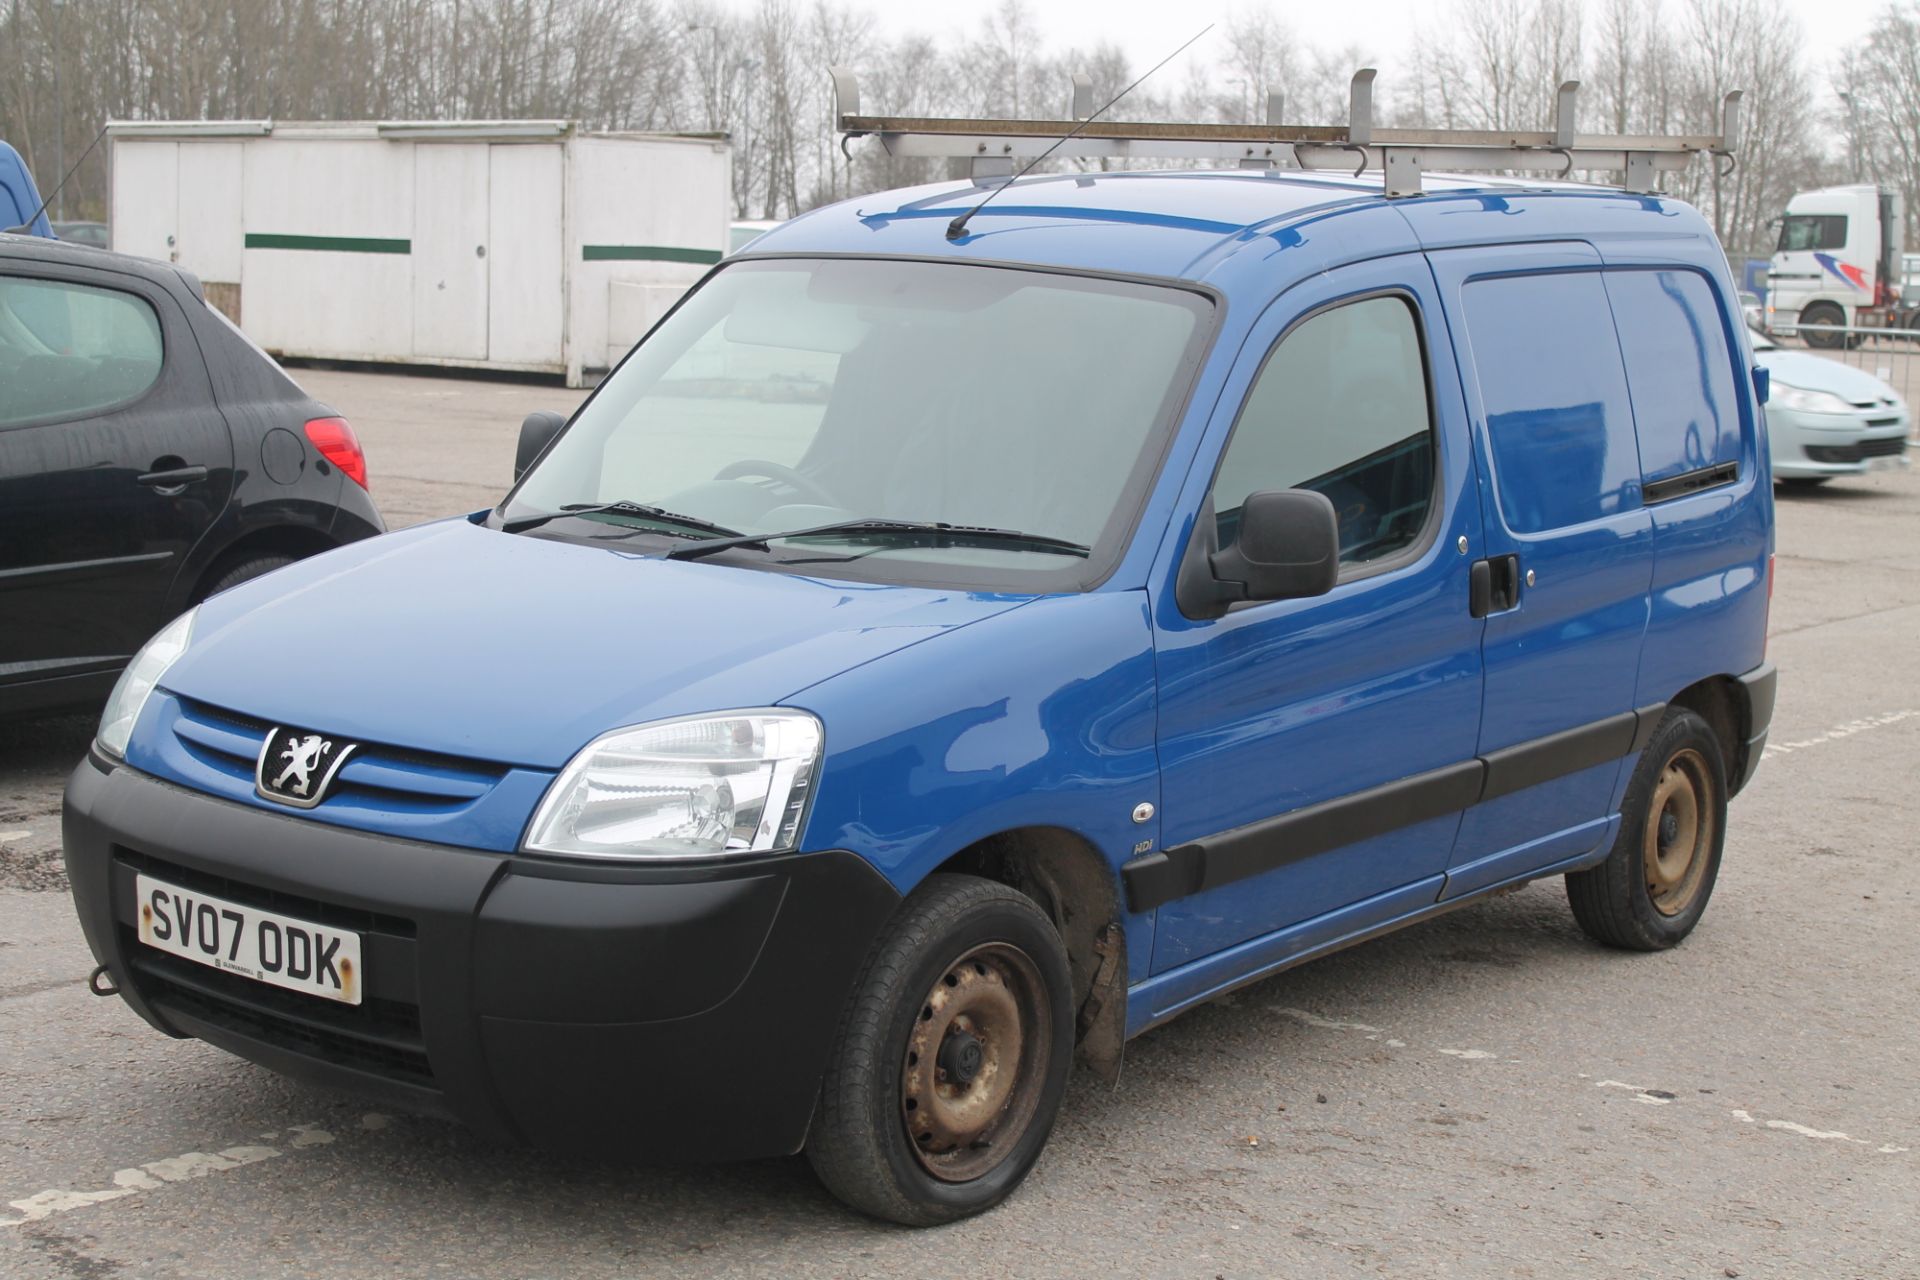 Peugeot Partner Lx600 66kw - 1560cc 2 Door Van - Image 2 of 8